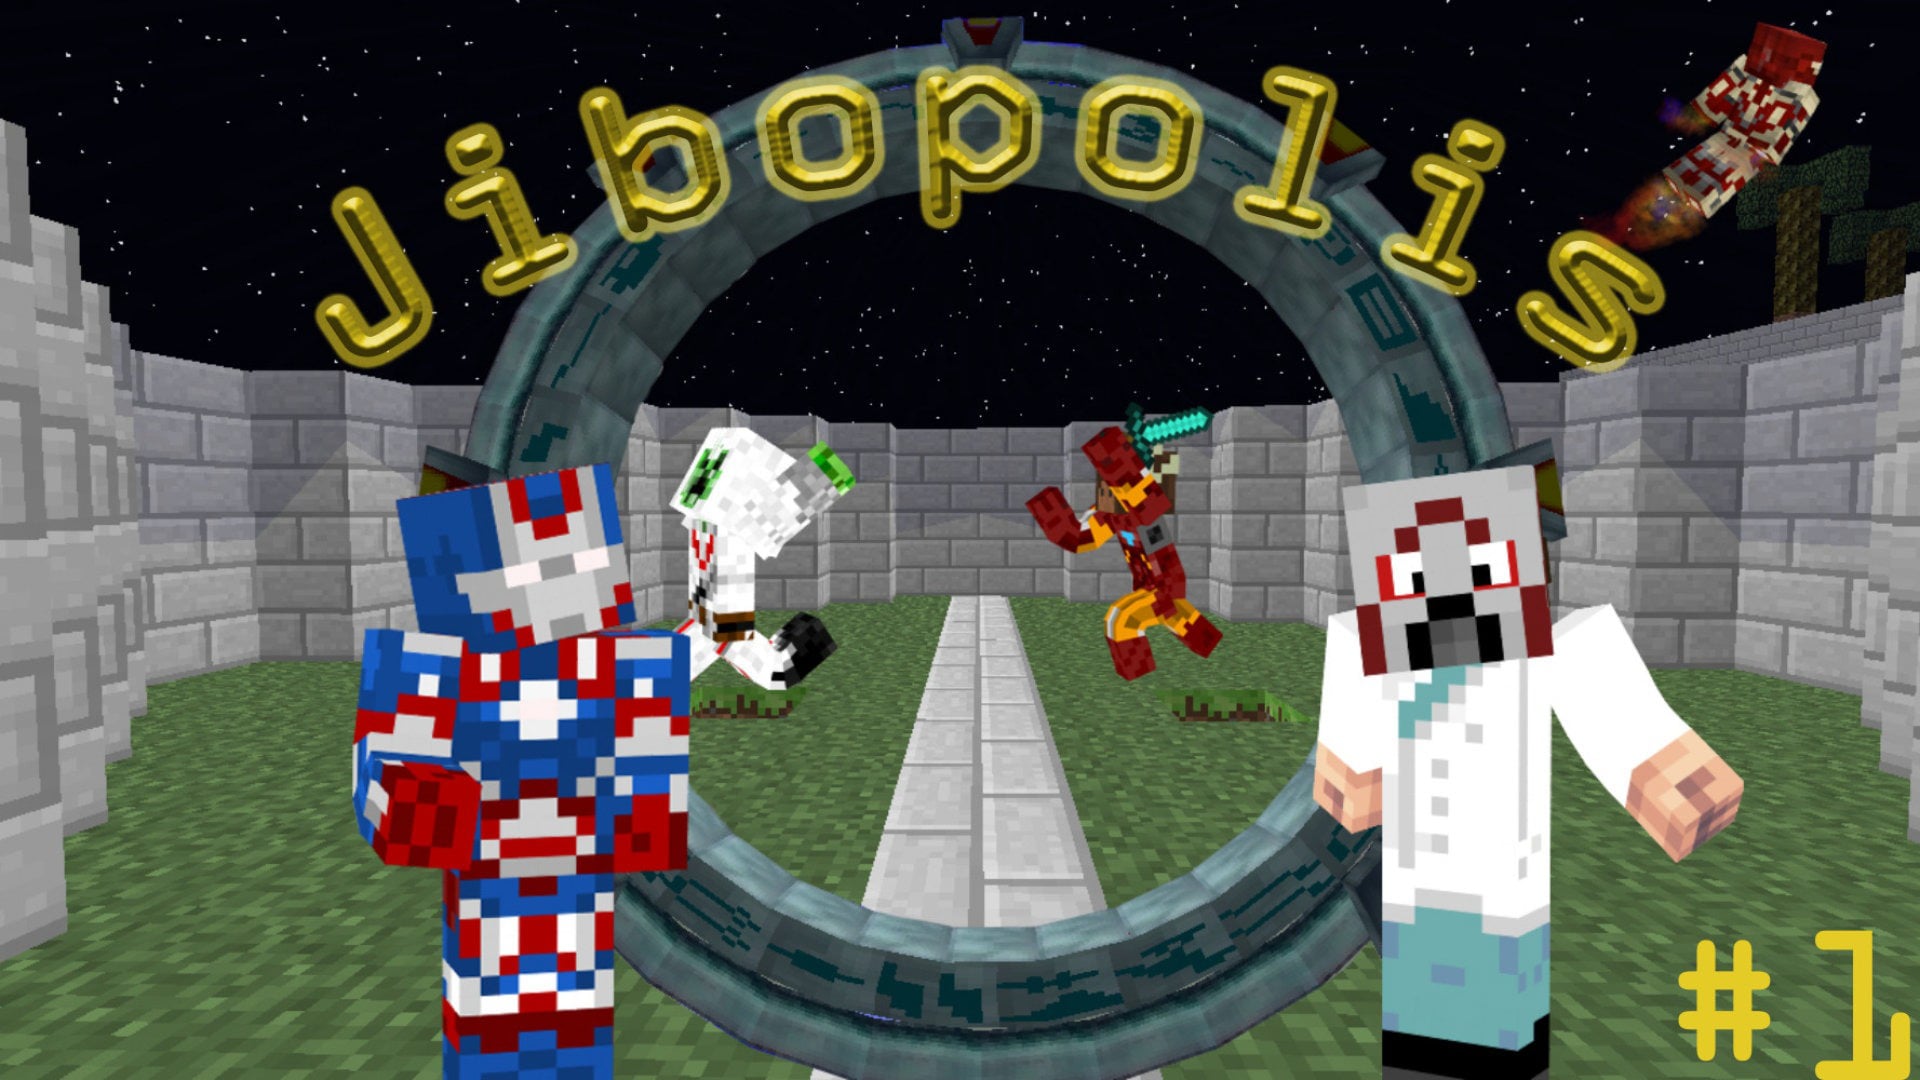 Jibopolis - Episode 1